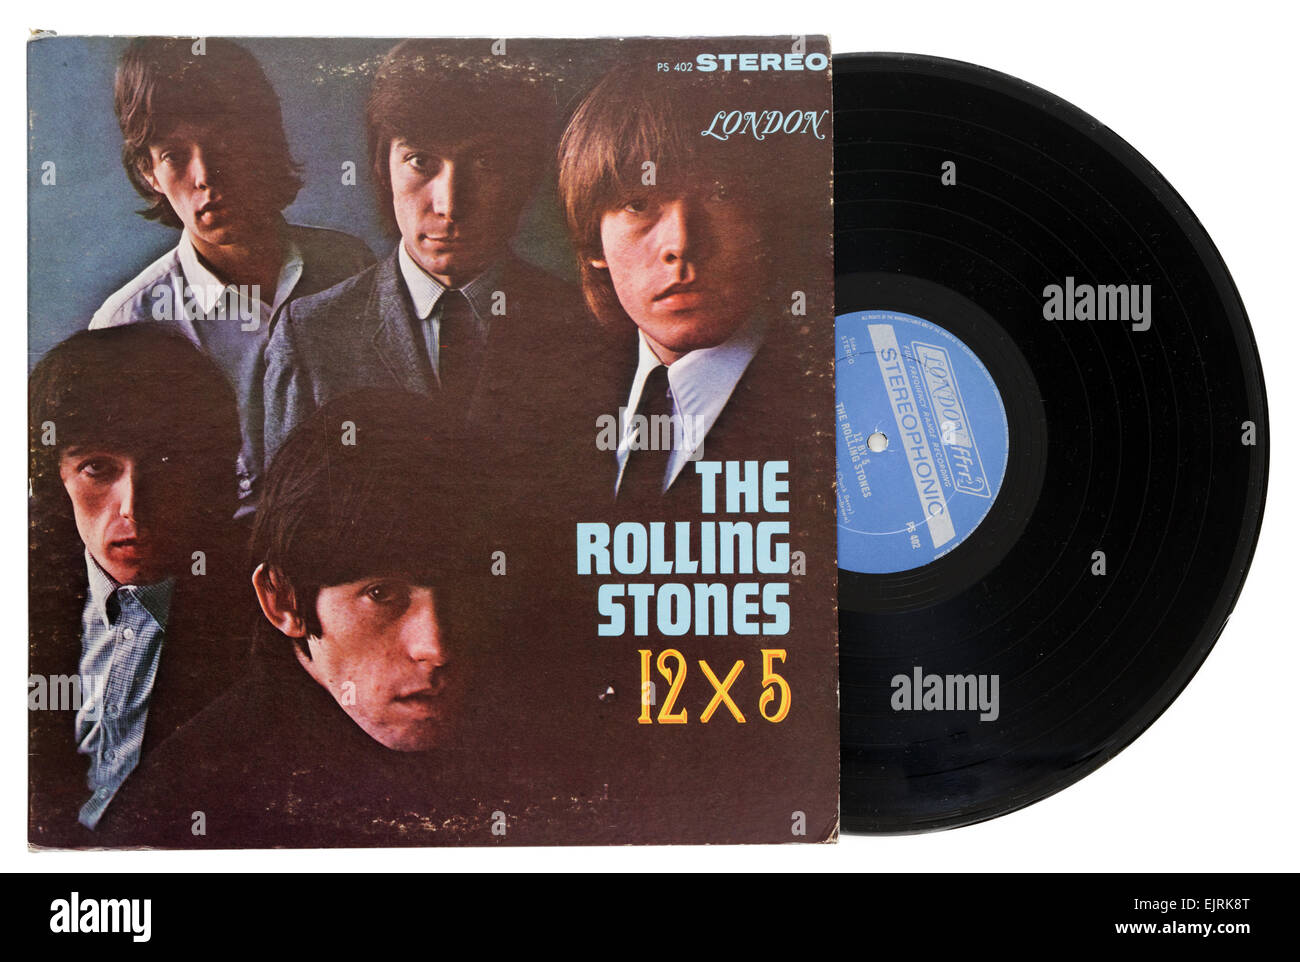 The Rolling Stones 12 x 5 album Stock Photo